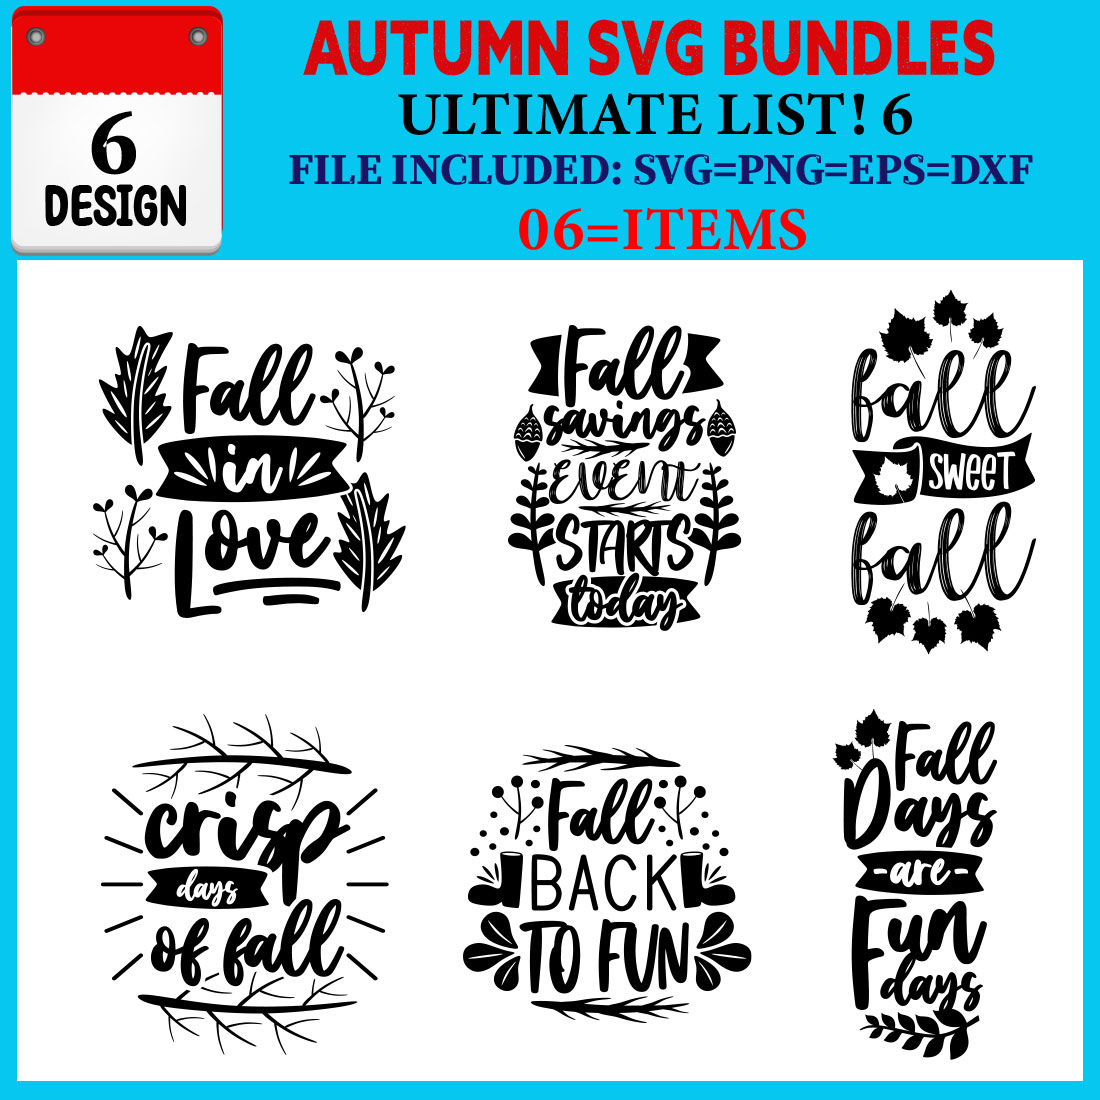 Autumn T-shirt Design Bundle Vol-02 cover image.